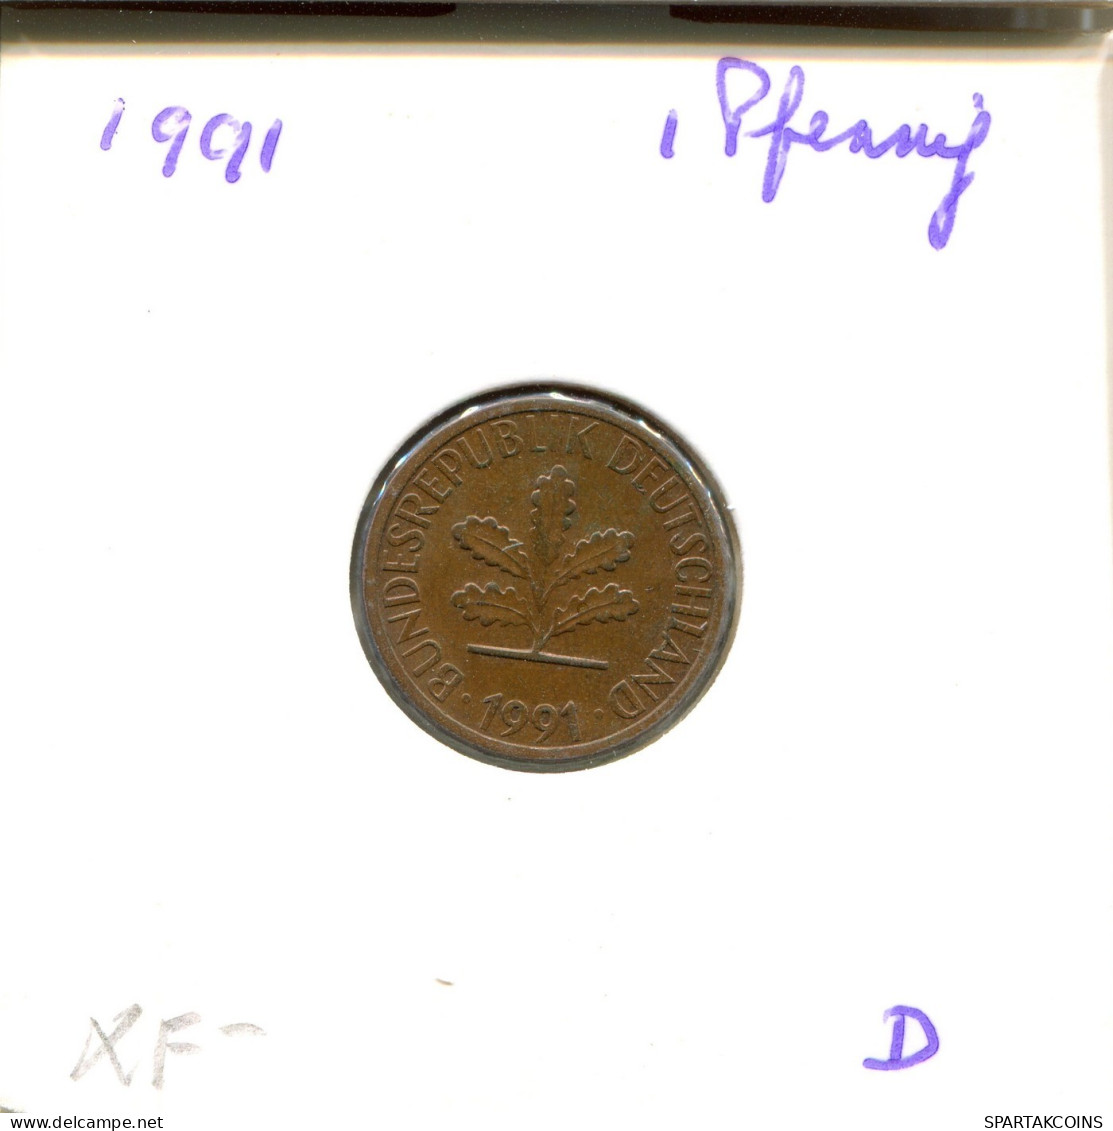 1 PFENNIG 1991 D BRD ALEMANIA Moneda GERMANY #DB088.E.A - 1 Pfennig